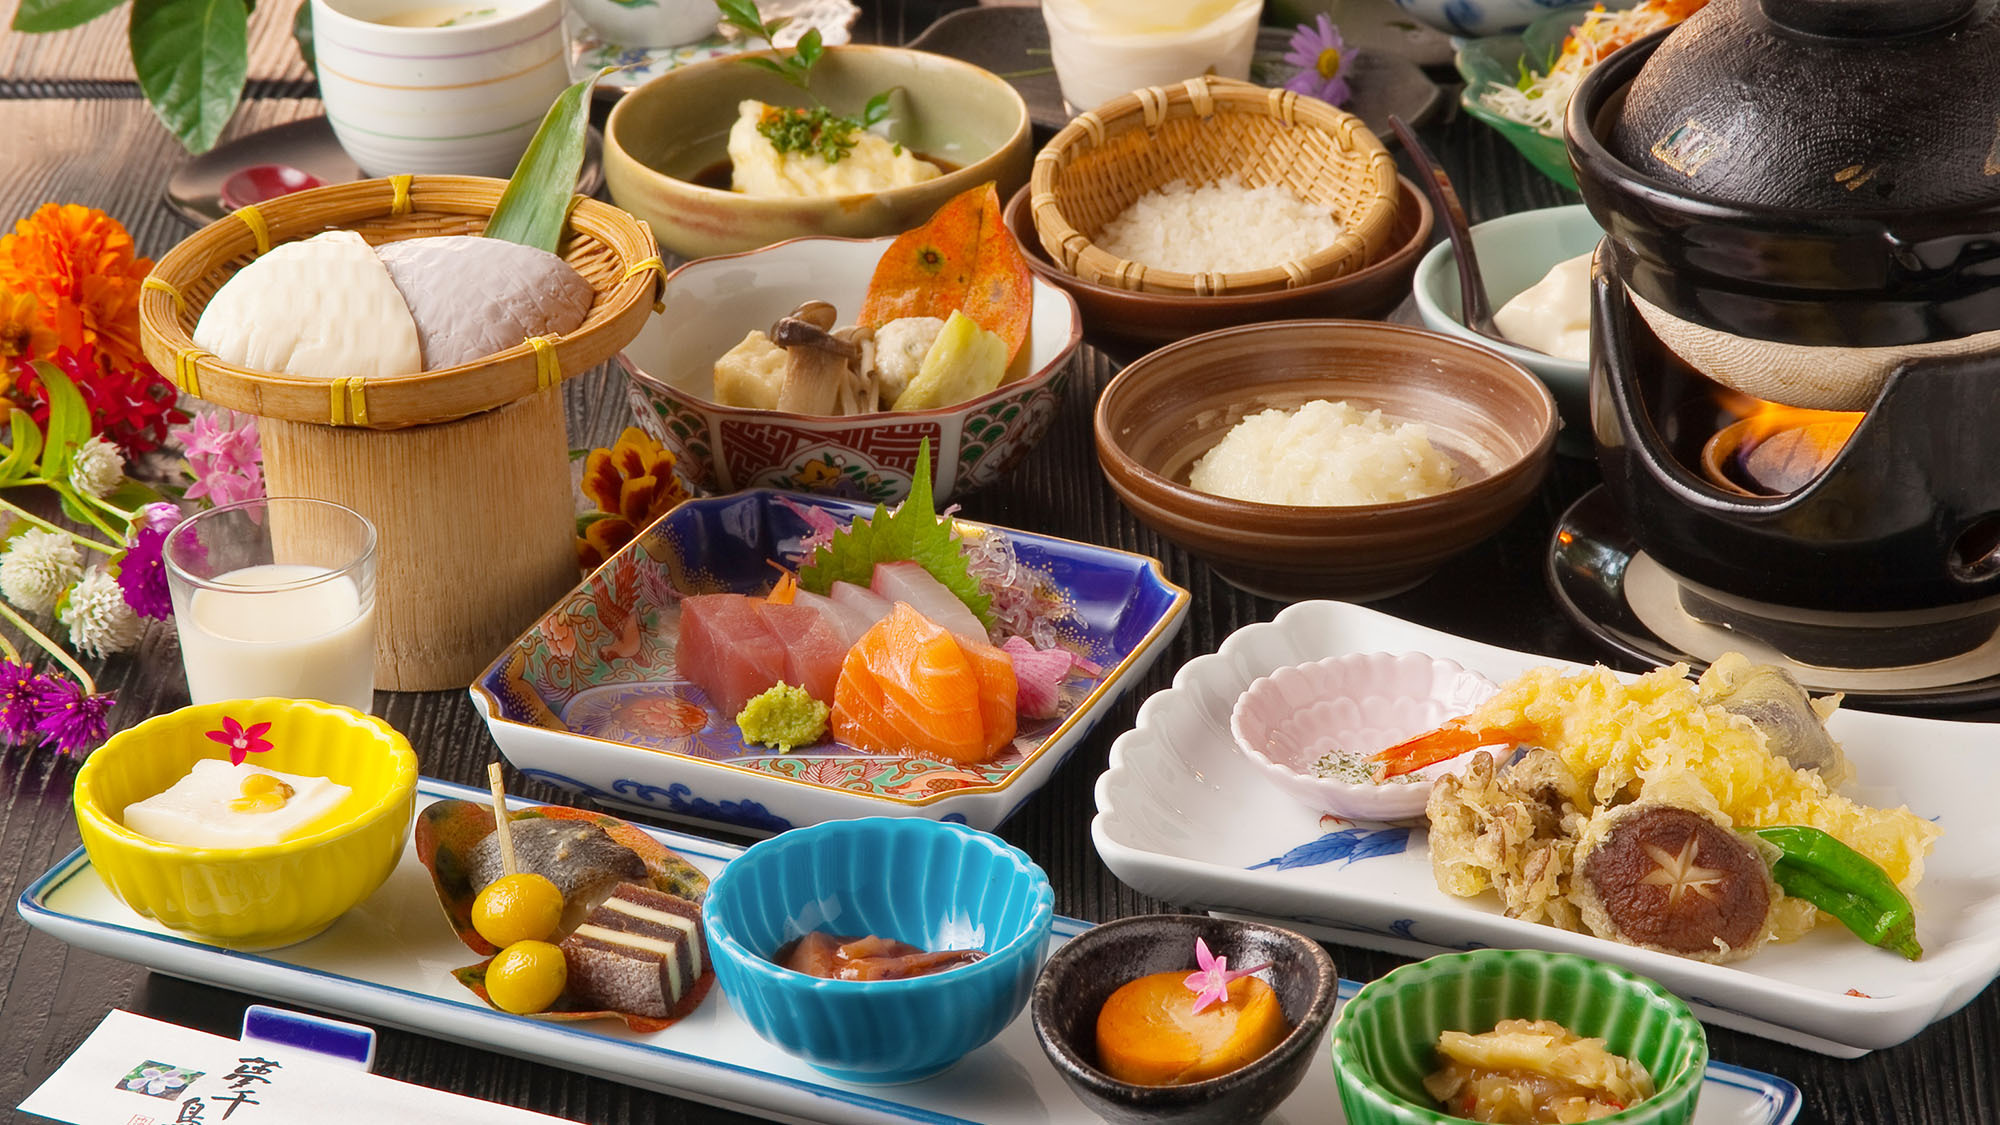 ・【ランチ】新鮮なお刺身やサクサクの天ぷらなど心づくしの料理をお召し上がりください